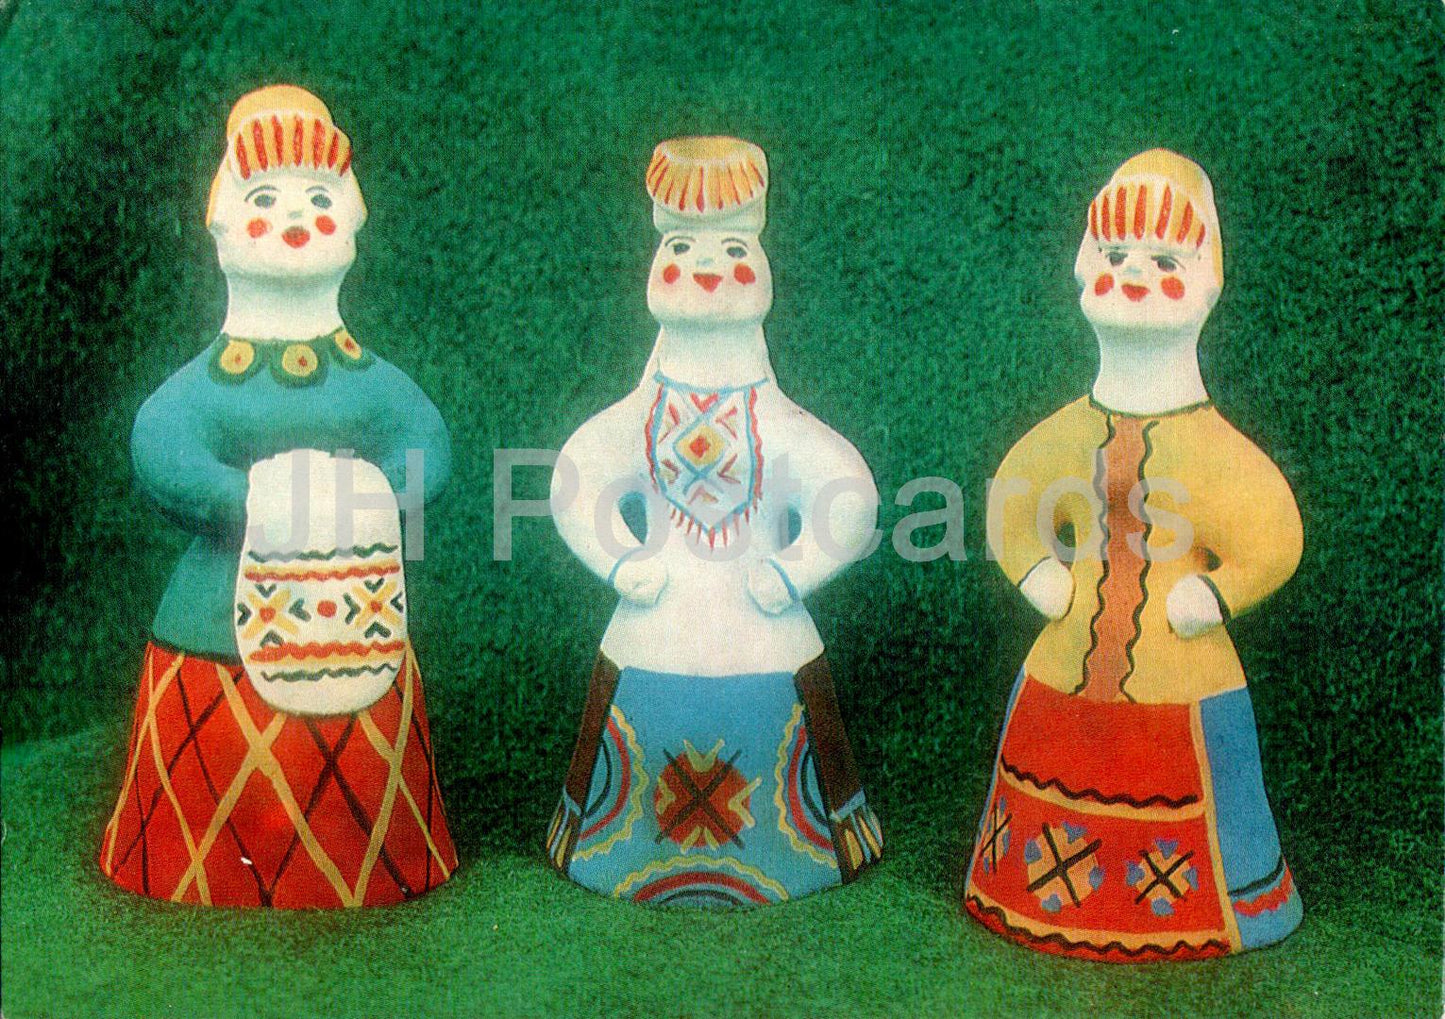 Région d'Arhangelsk - Jouet en argile de Kargopol - poupée - 1988 - Russie URSS - inutilisé 